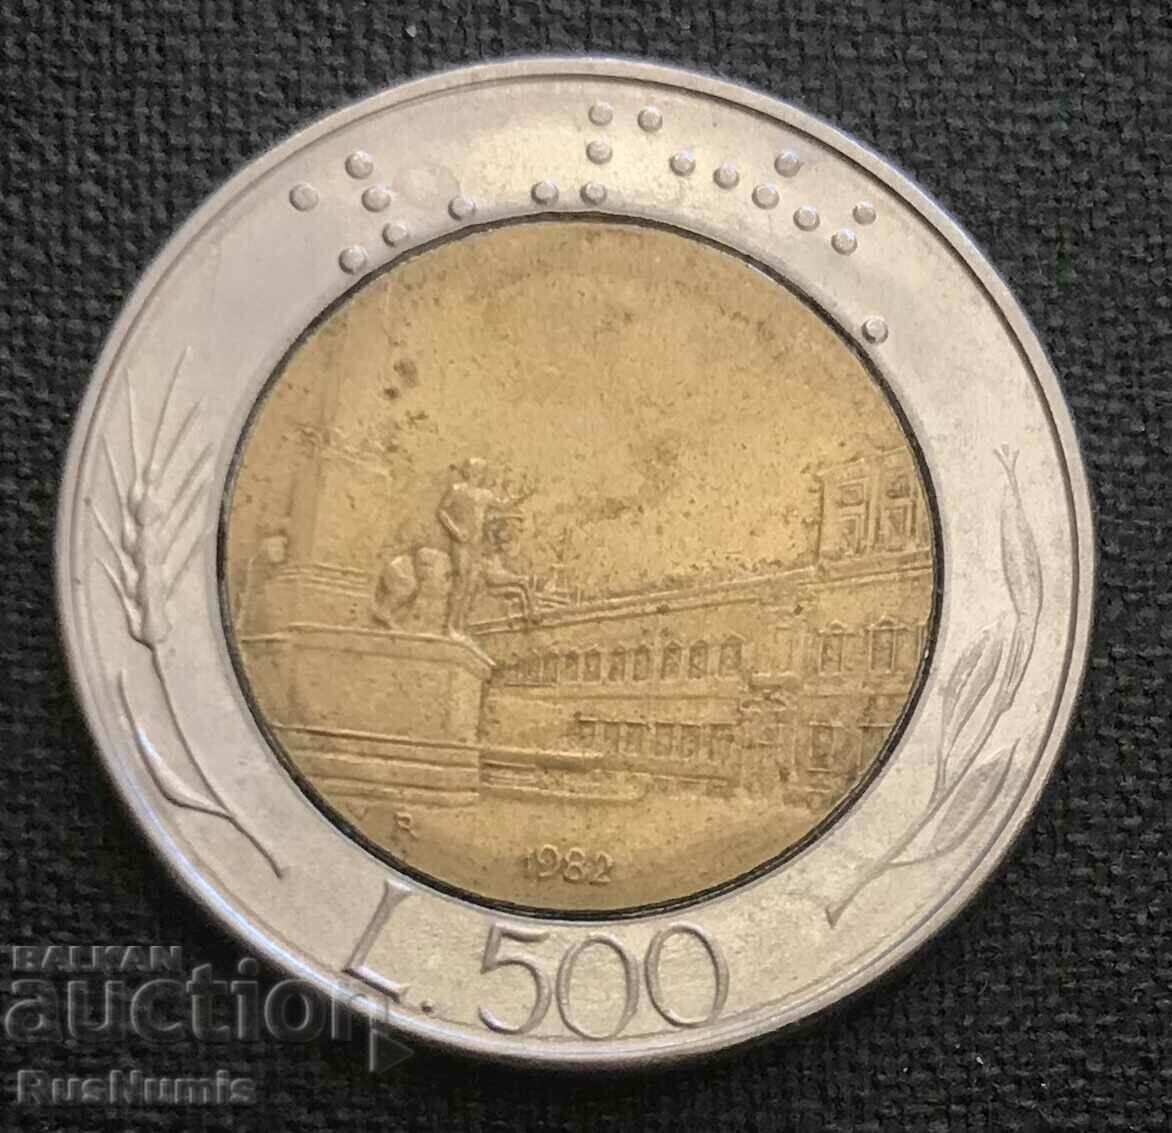 Italy.500 lira 1982.